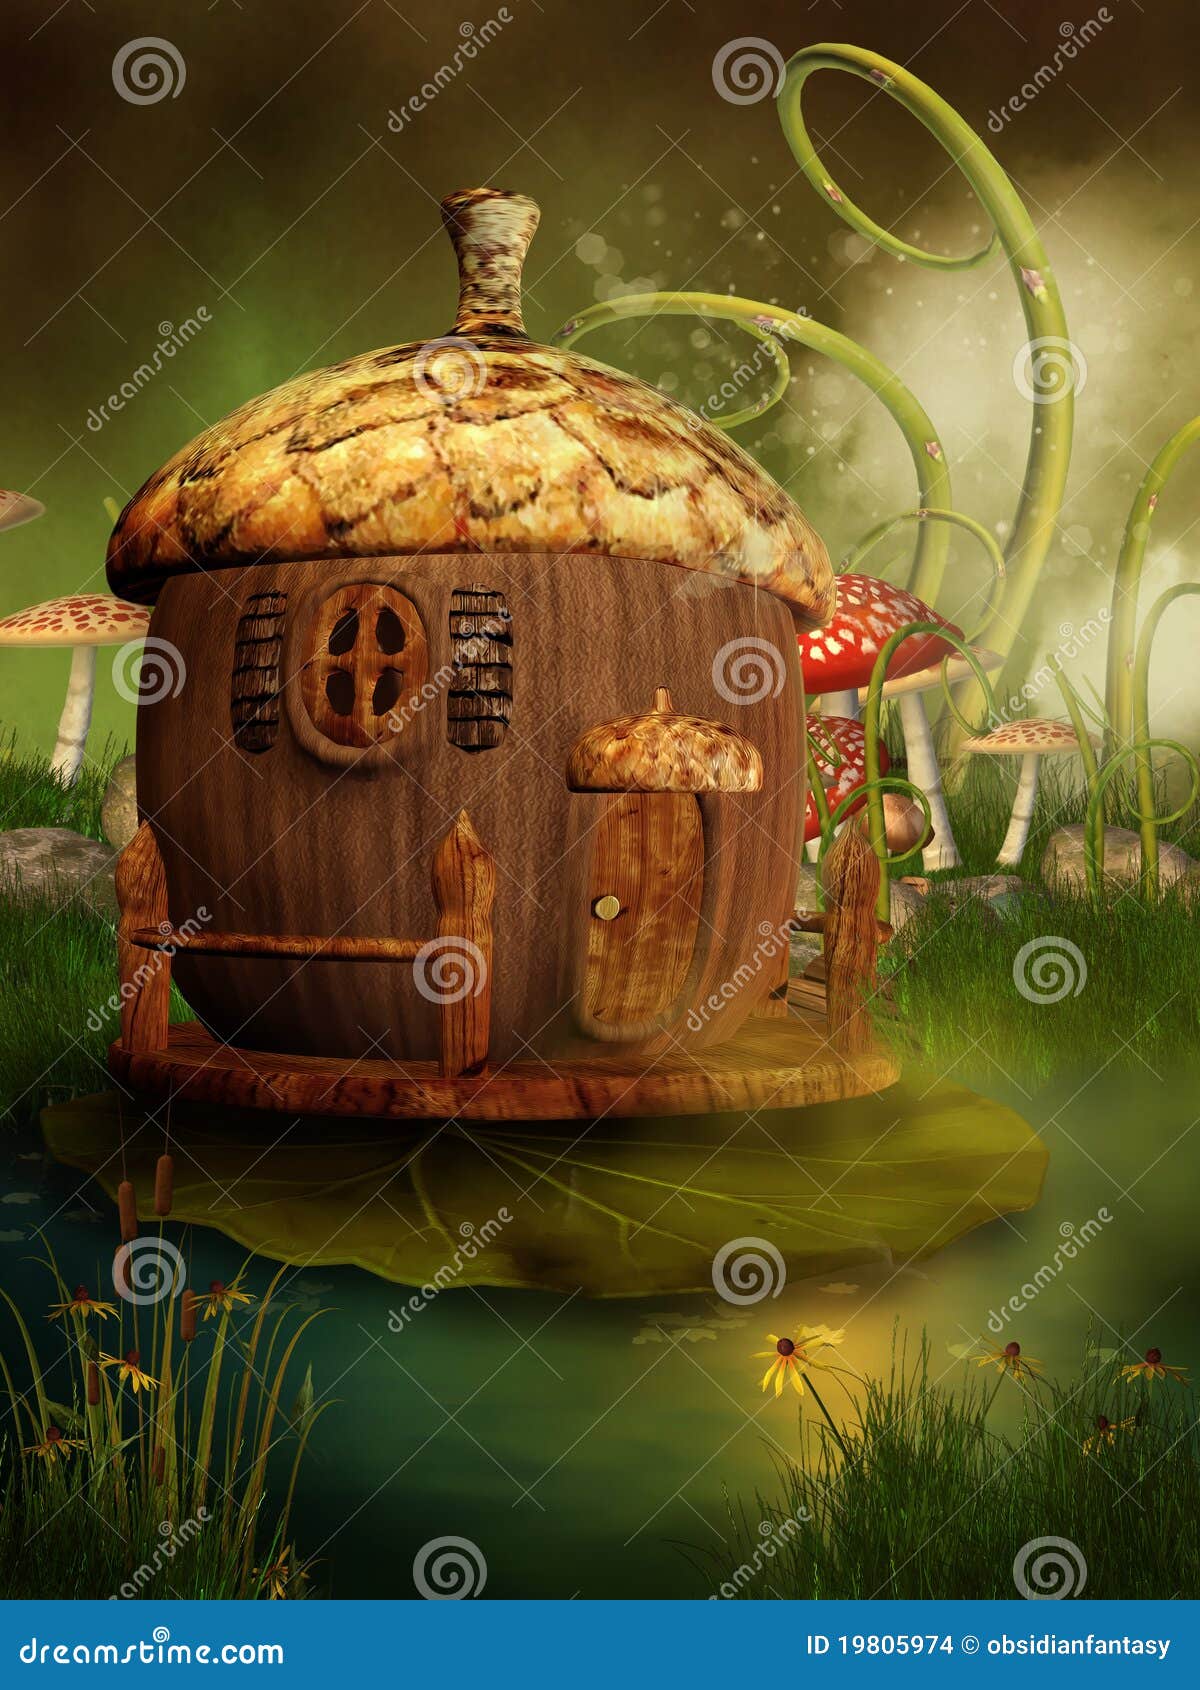 fairytale acorn house